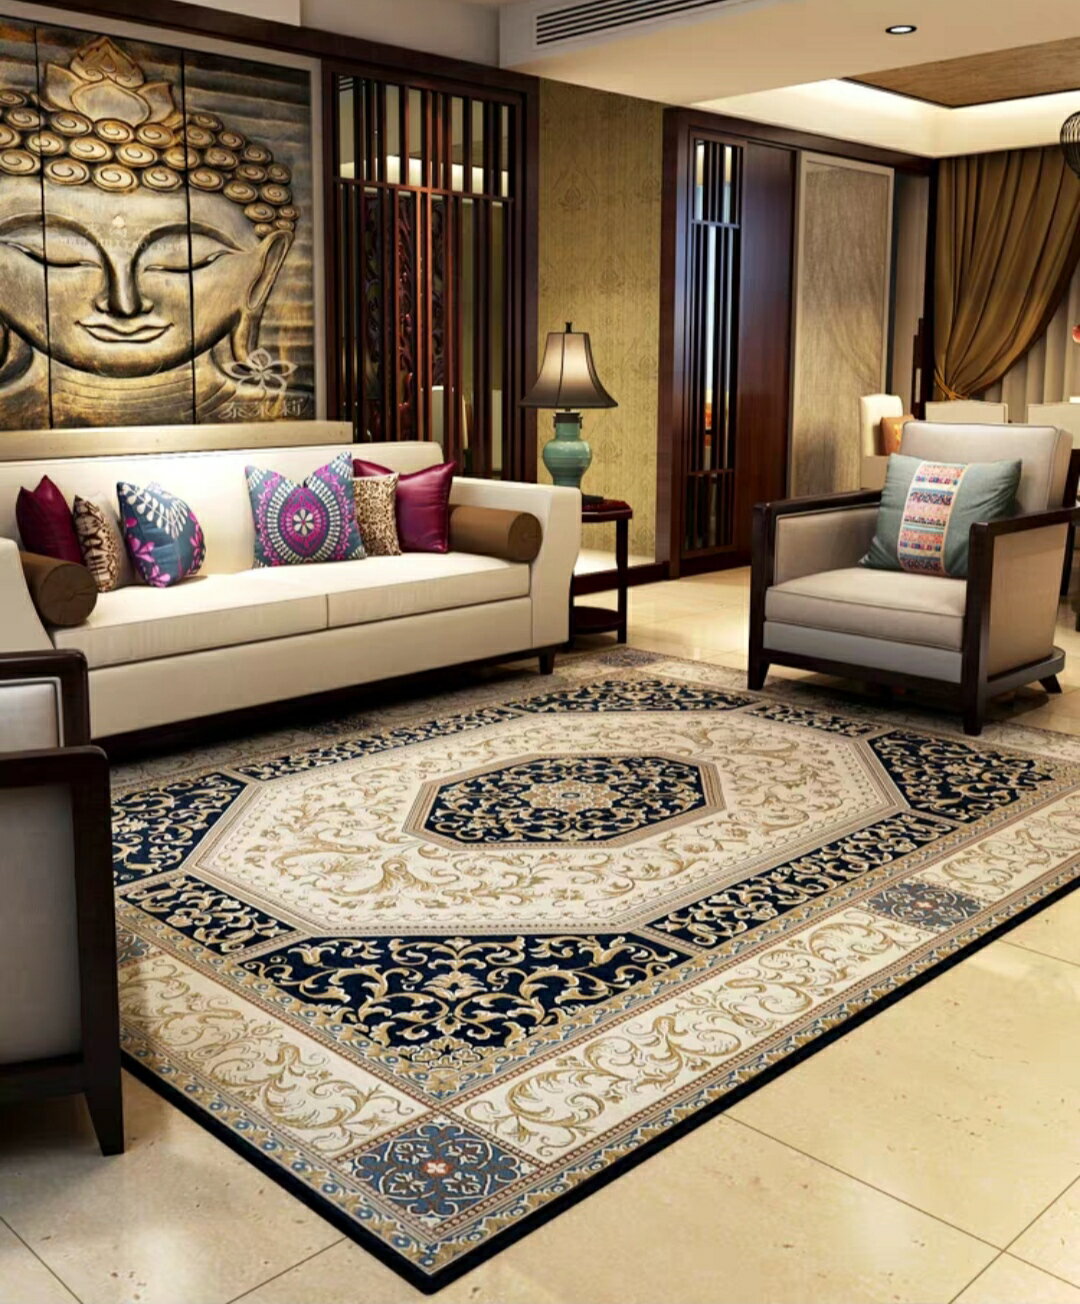 外銷日本等級 出口日本 140*200 CM 富貴滿堂 摩登中式風格 高級地毯/ 玄關地毯 / 客廳地毯